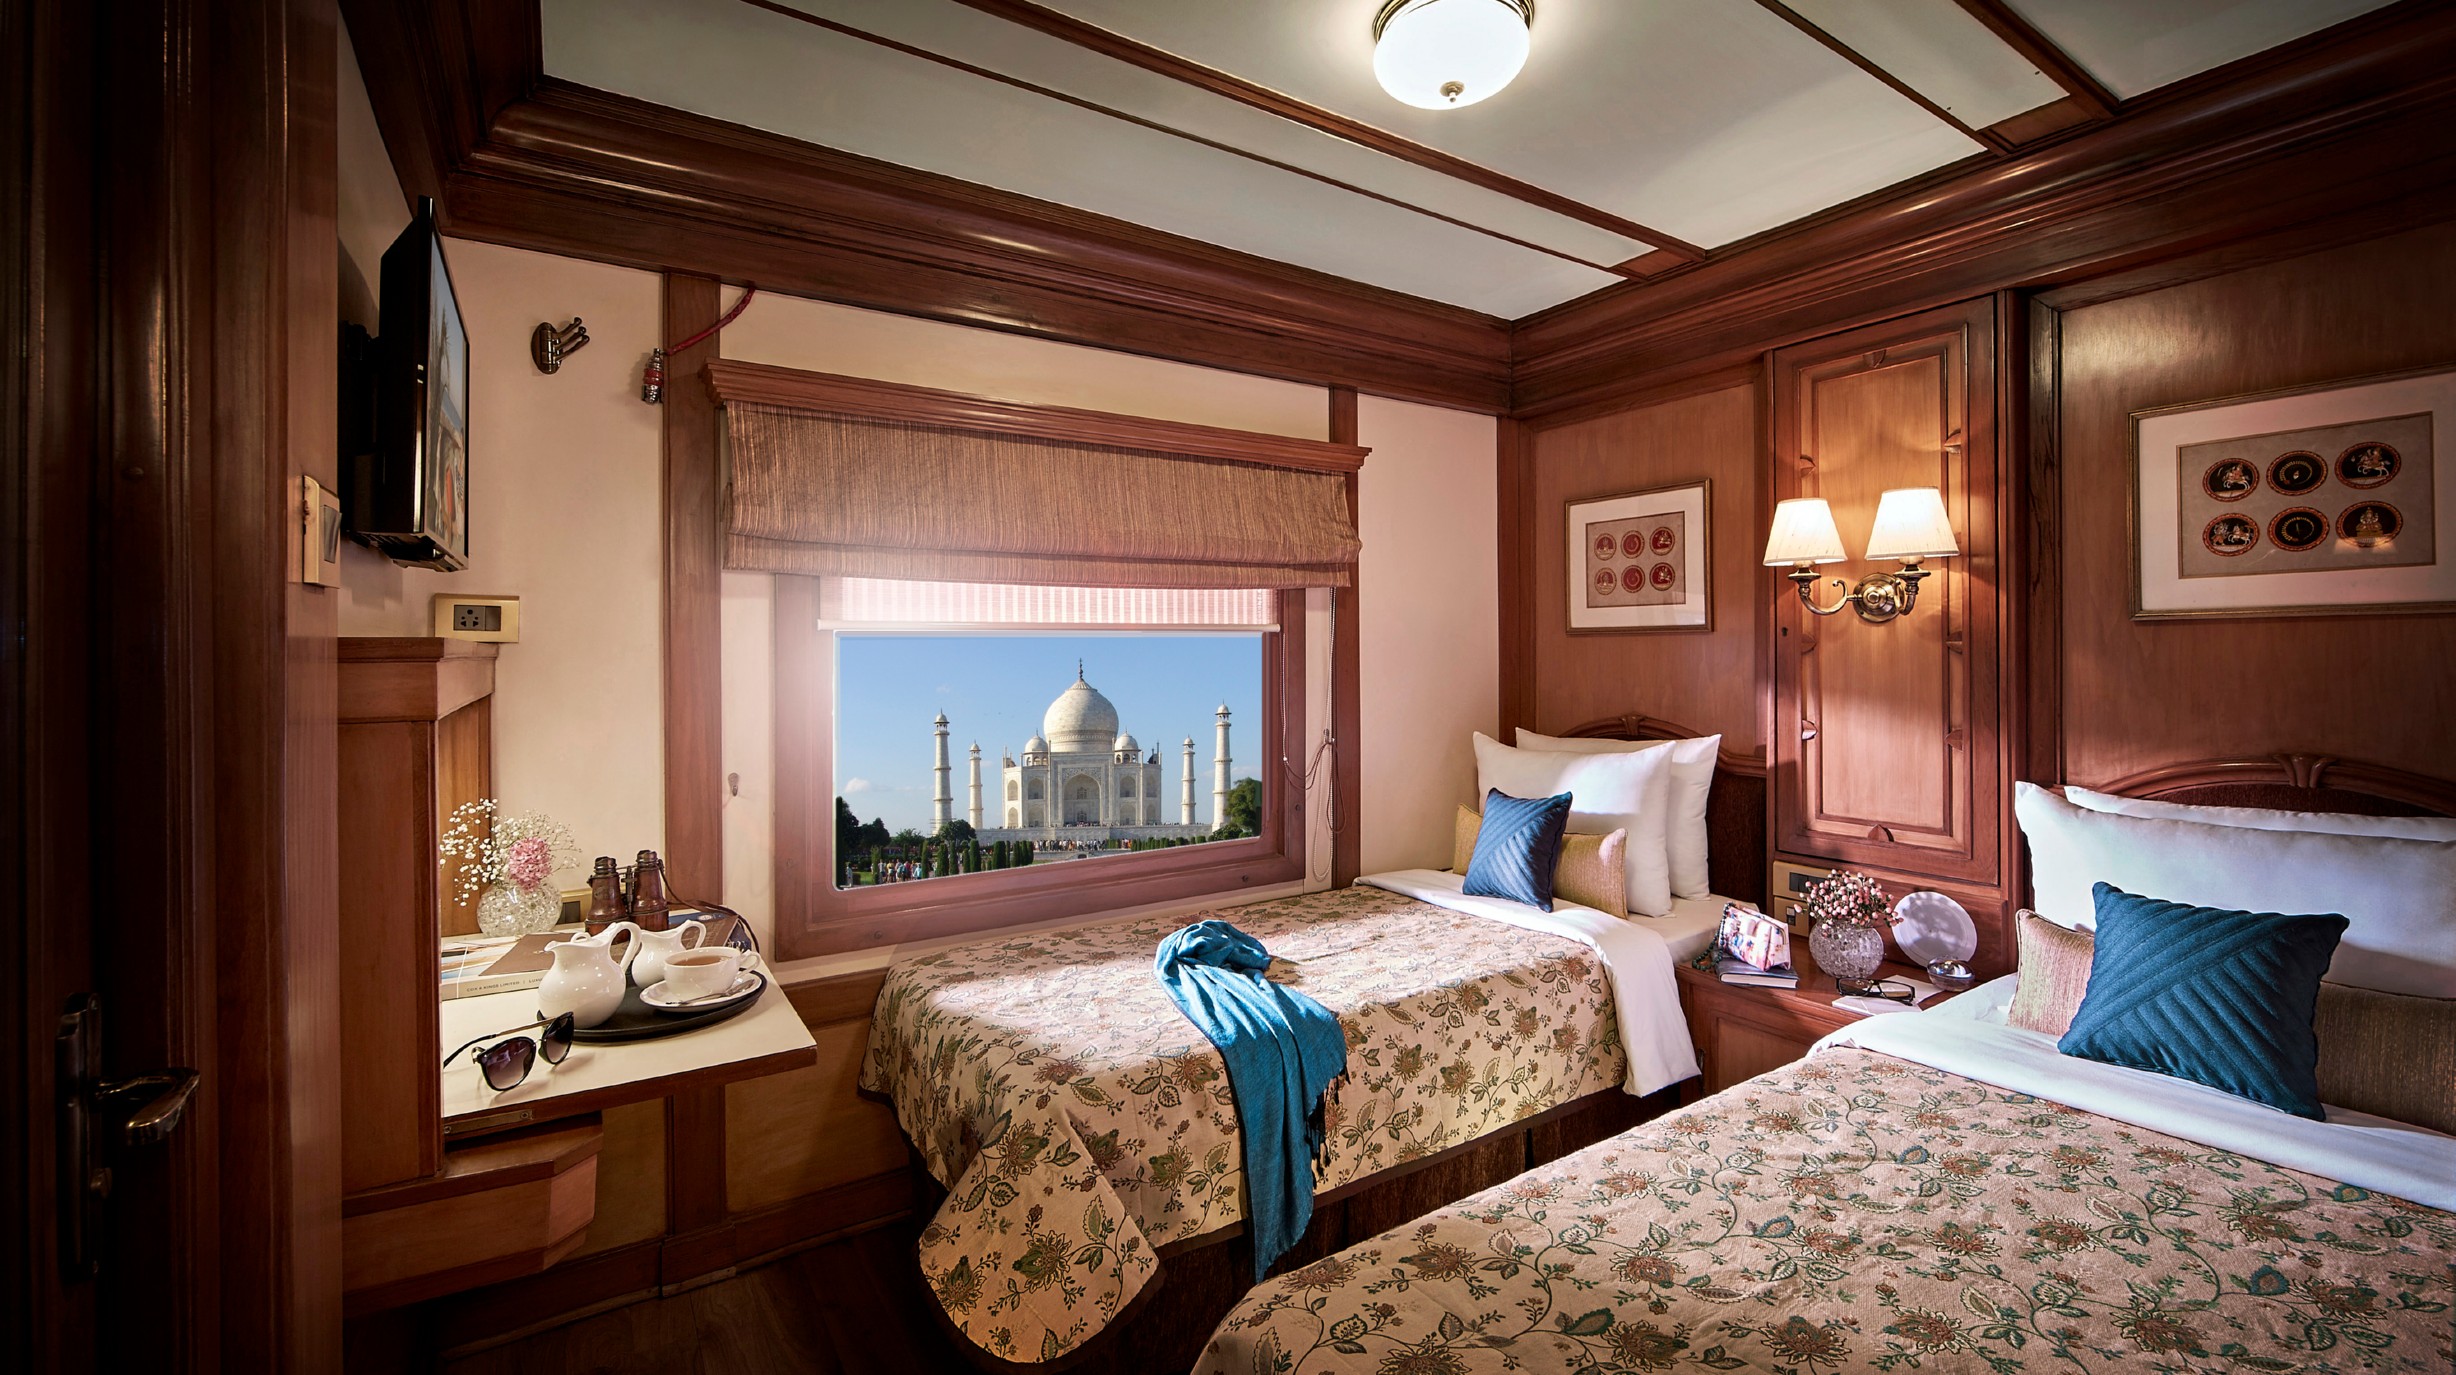 16-daagse treinreis Zuid India met de luxe Deccan Odyssey